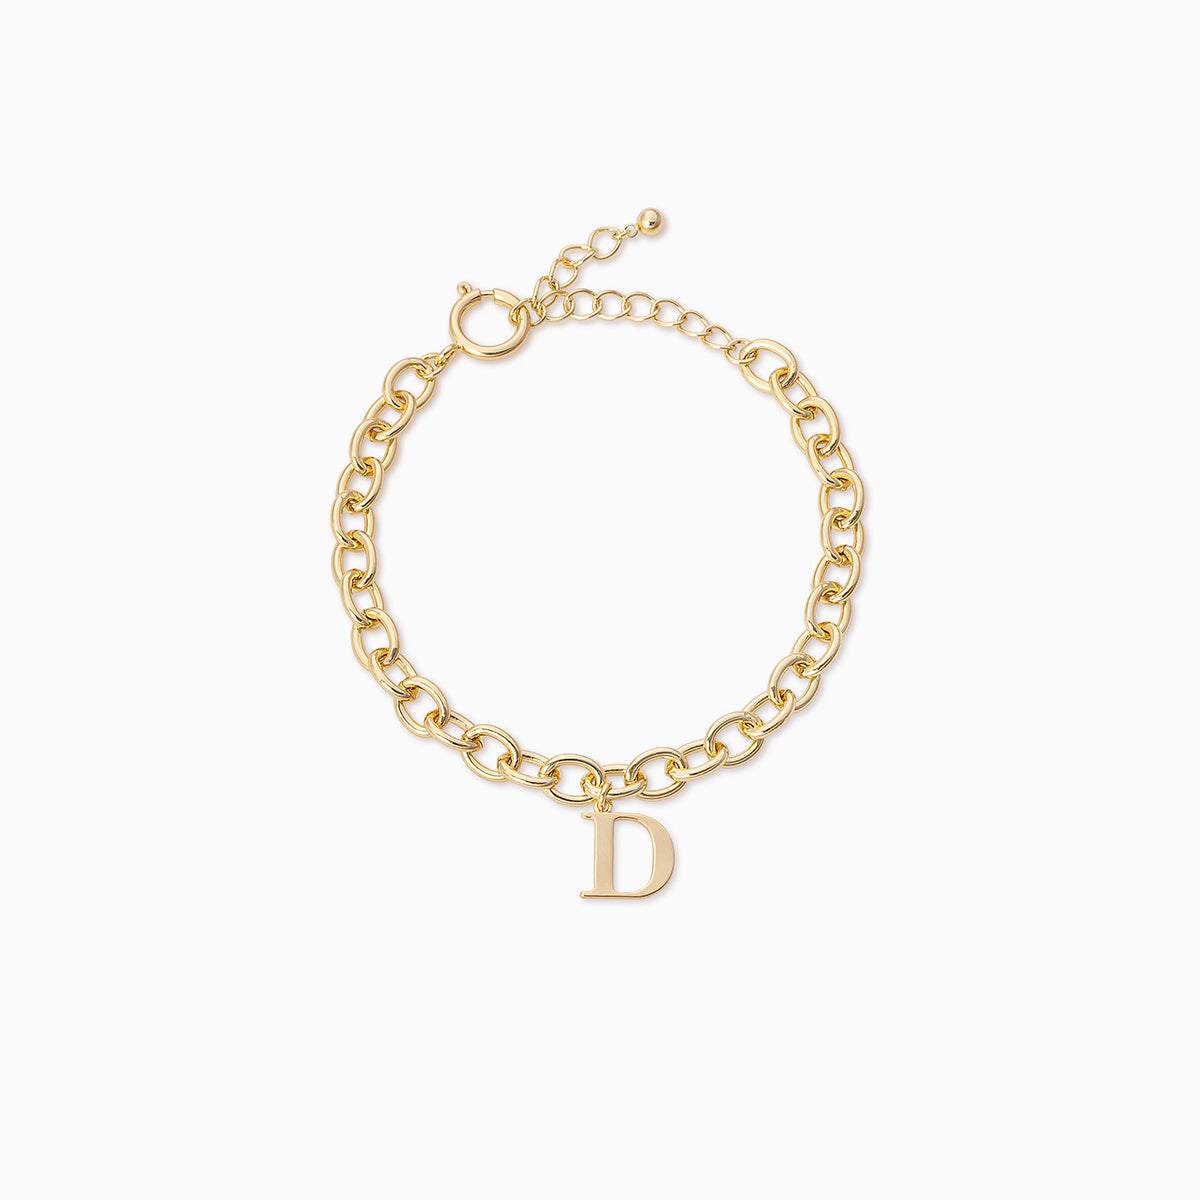 Remember Me Bracelet | Gold D | Product Image | Uncommon James